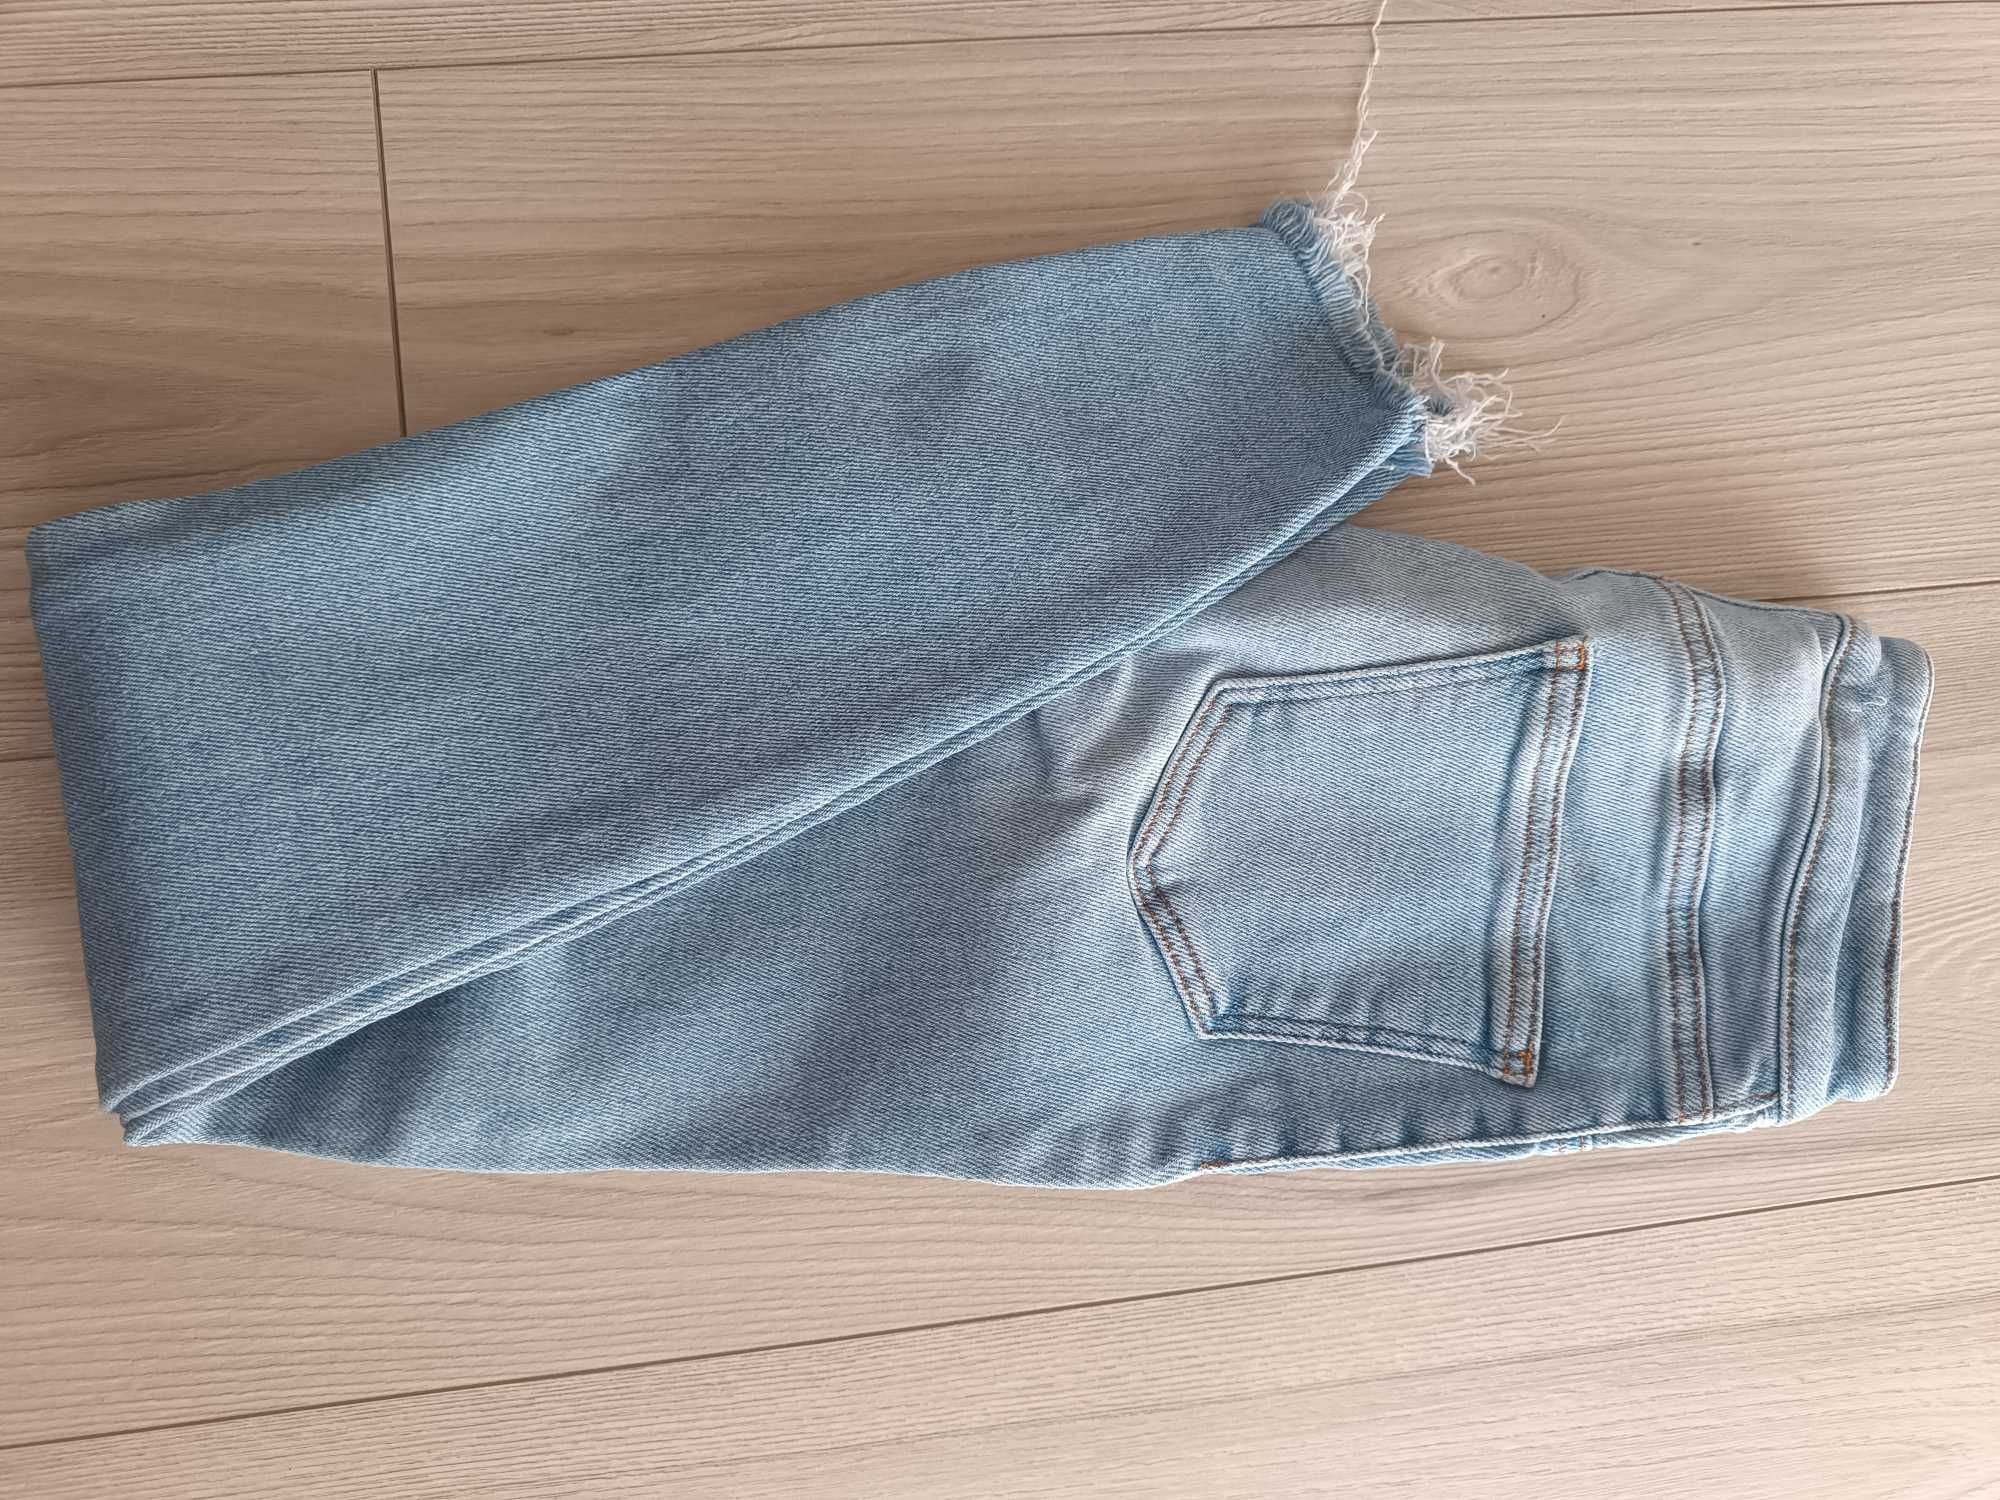 Spodnie damskie jeansowe z przetarciami Skinny używane, rozmiar 36